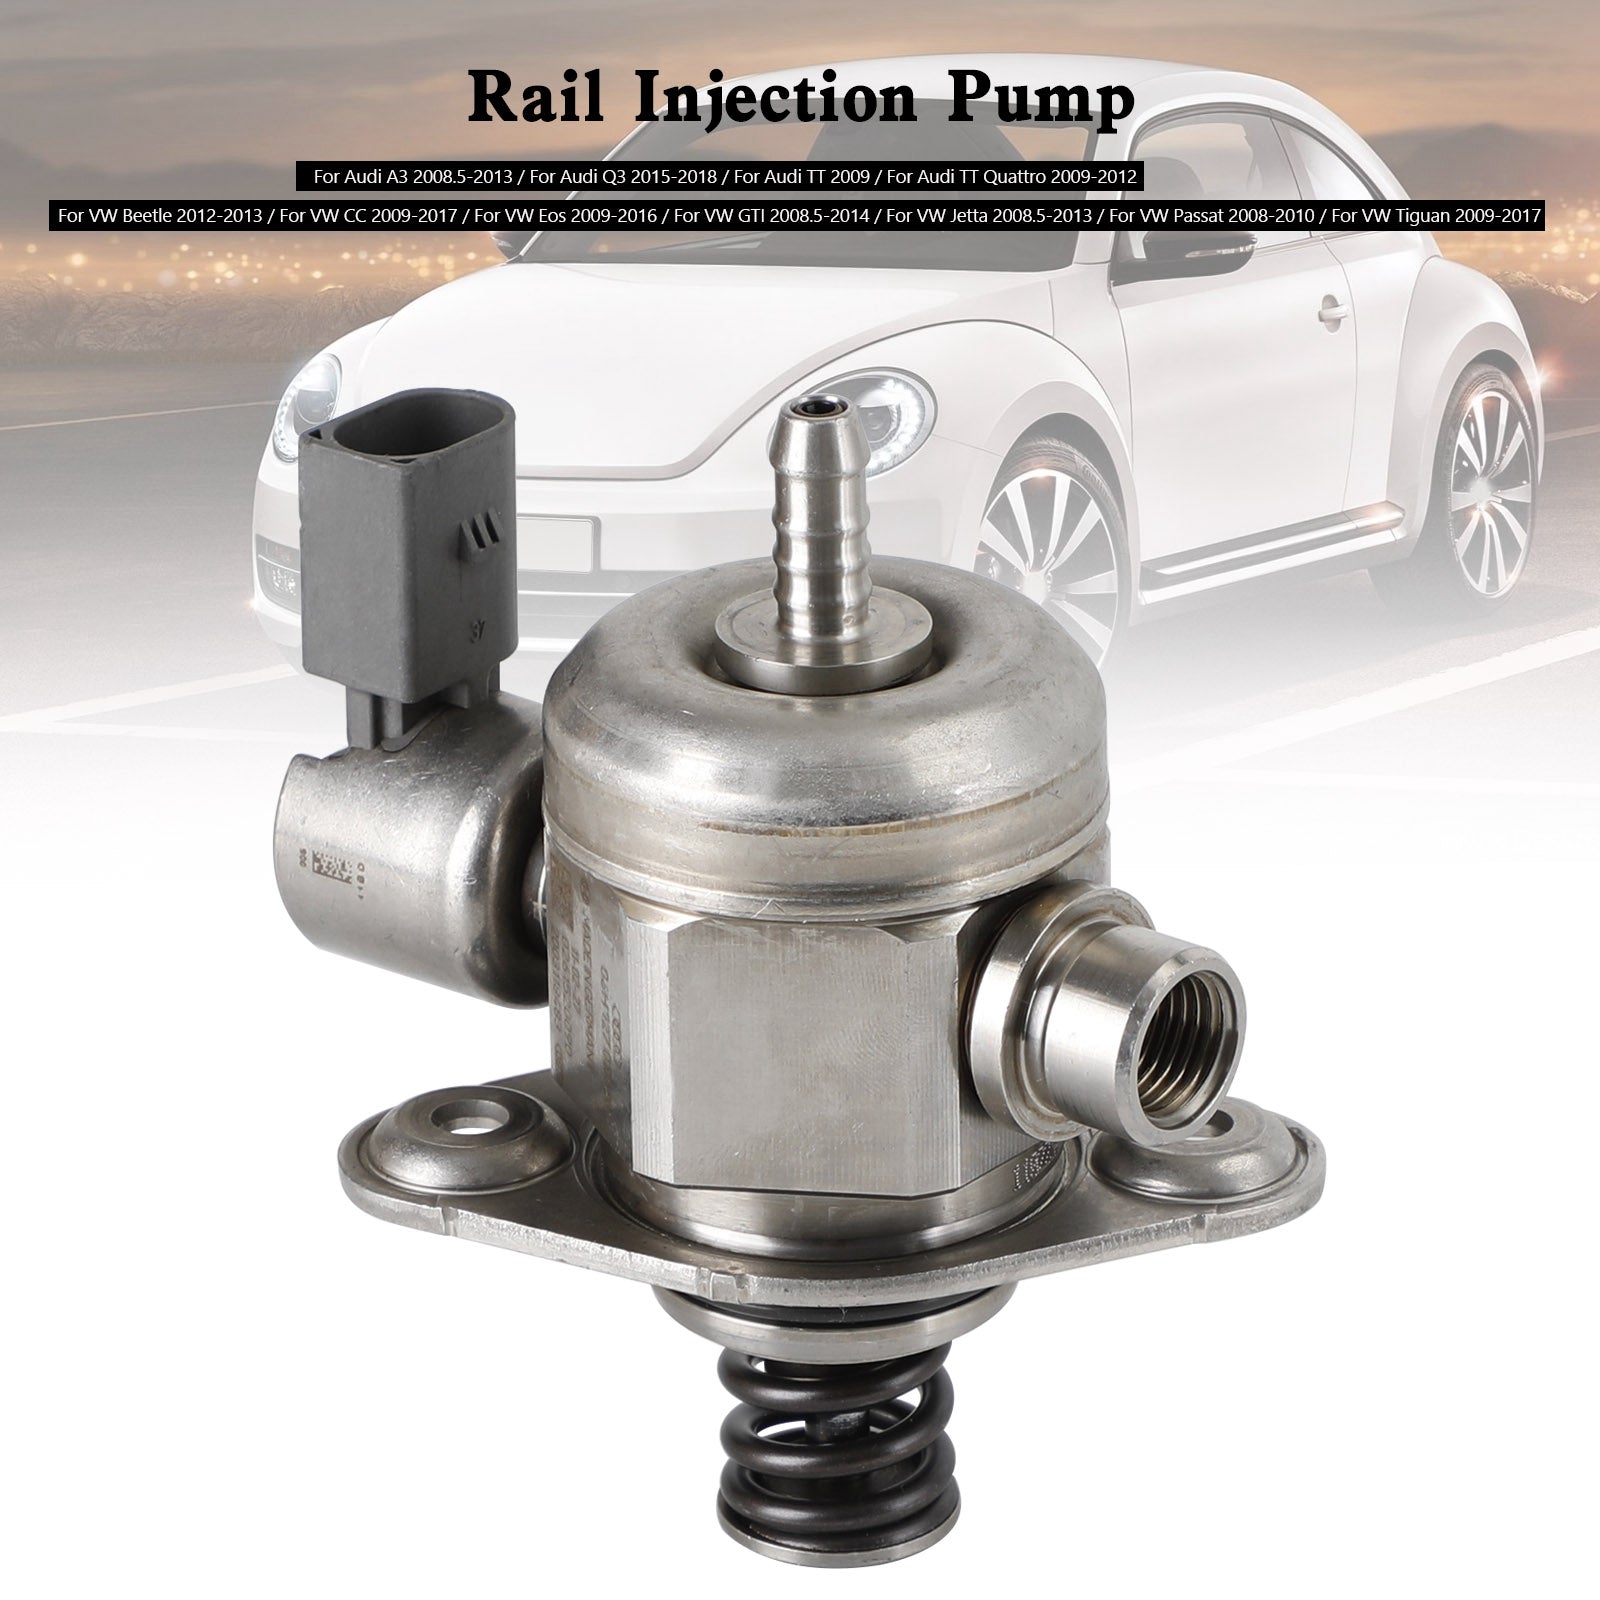 Pompa carburante ad alta pressione VW GTI 2008.5-2014 / VW Passat 2008-2010 06H127025N